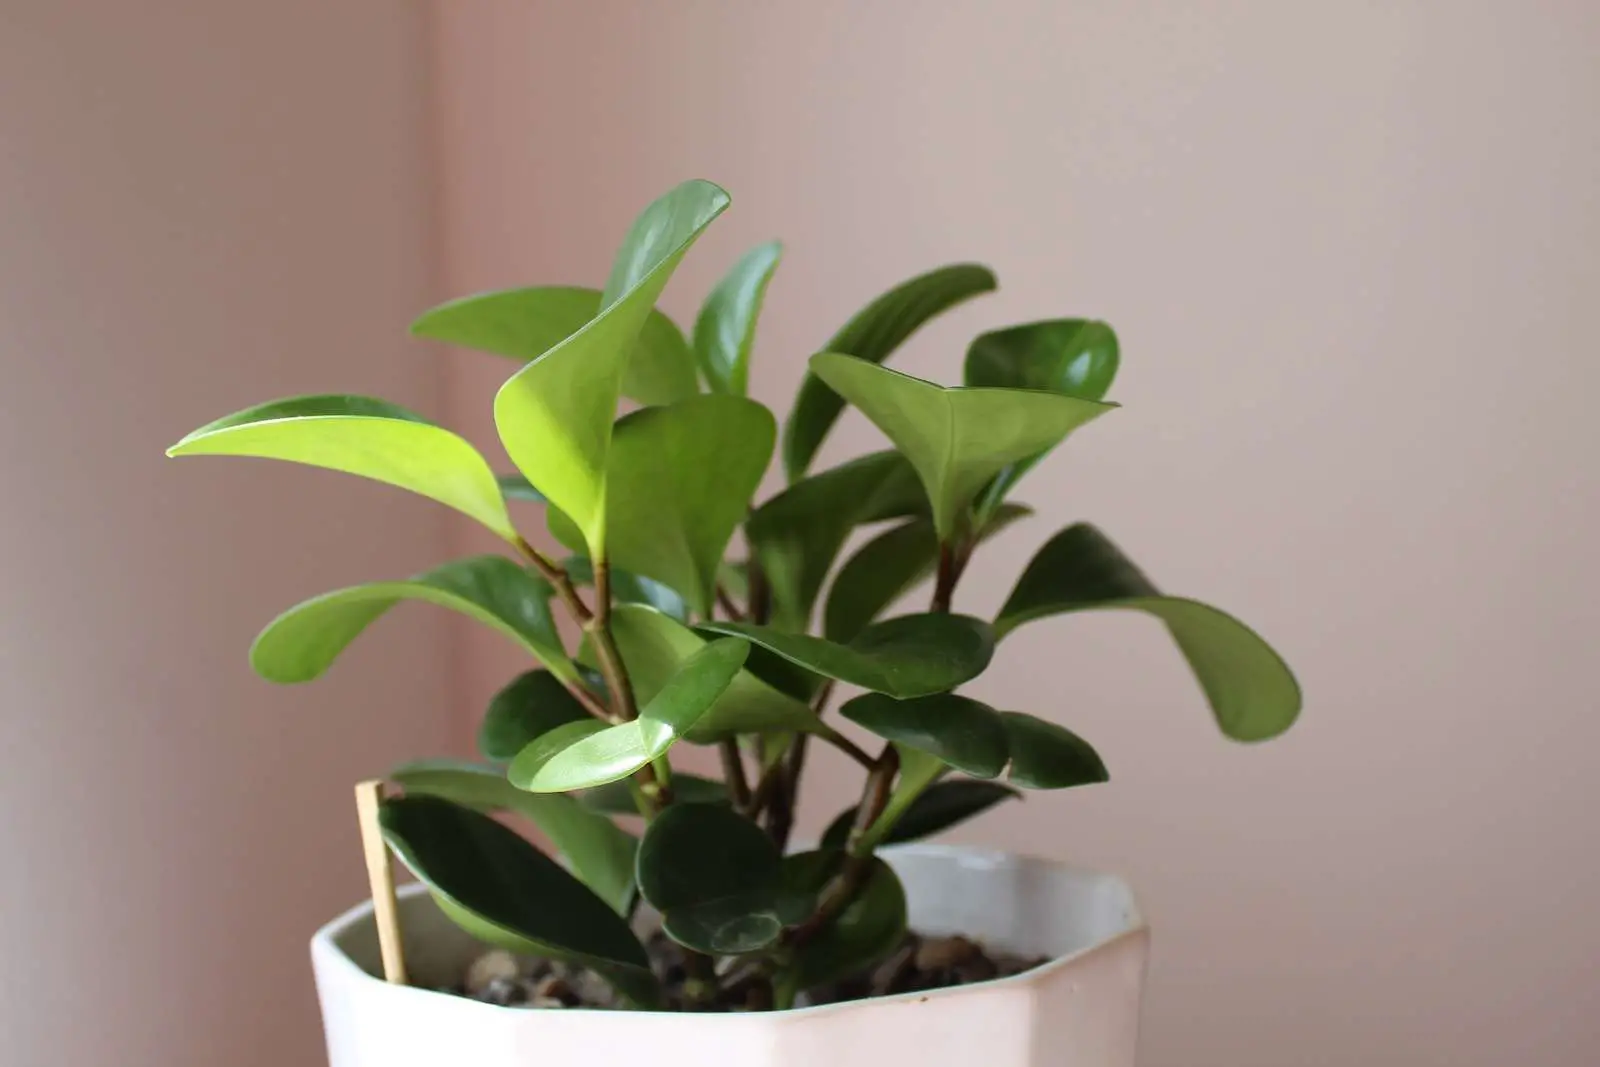 green plant on white ceramic pot - Peperomia